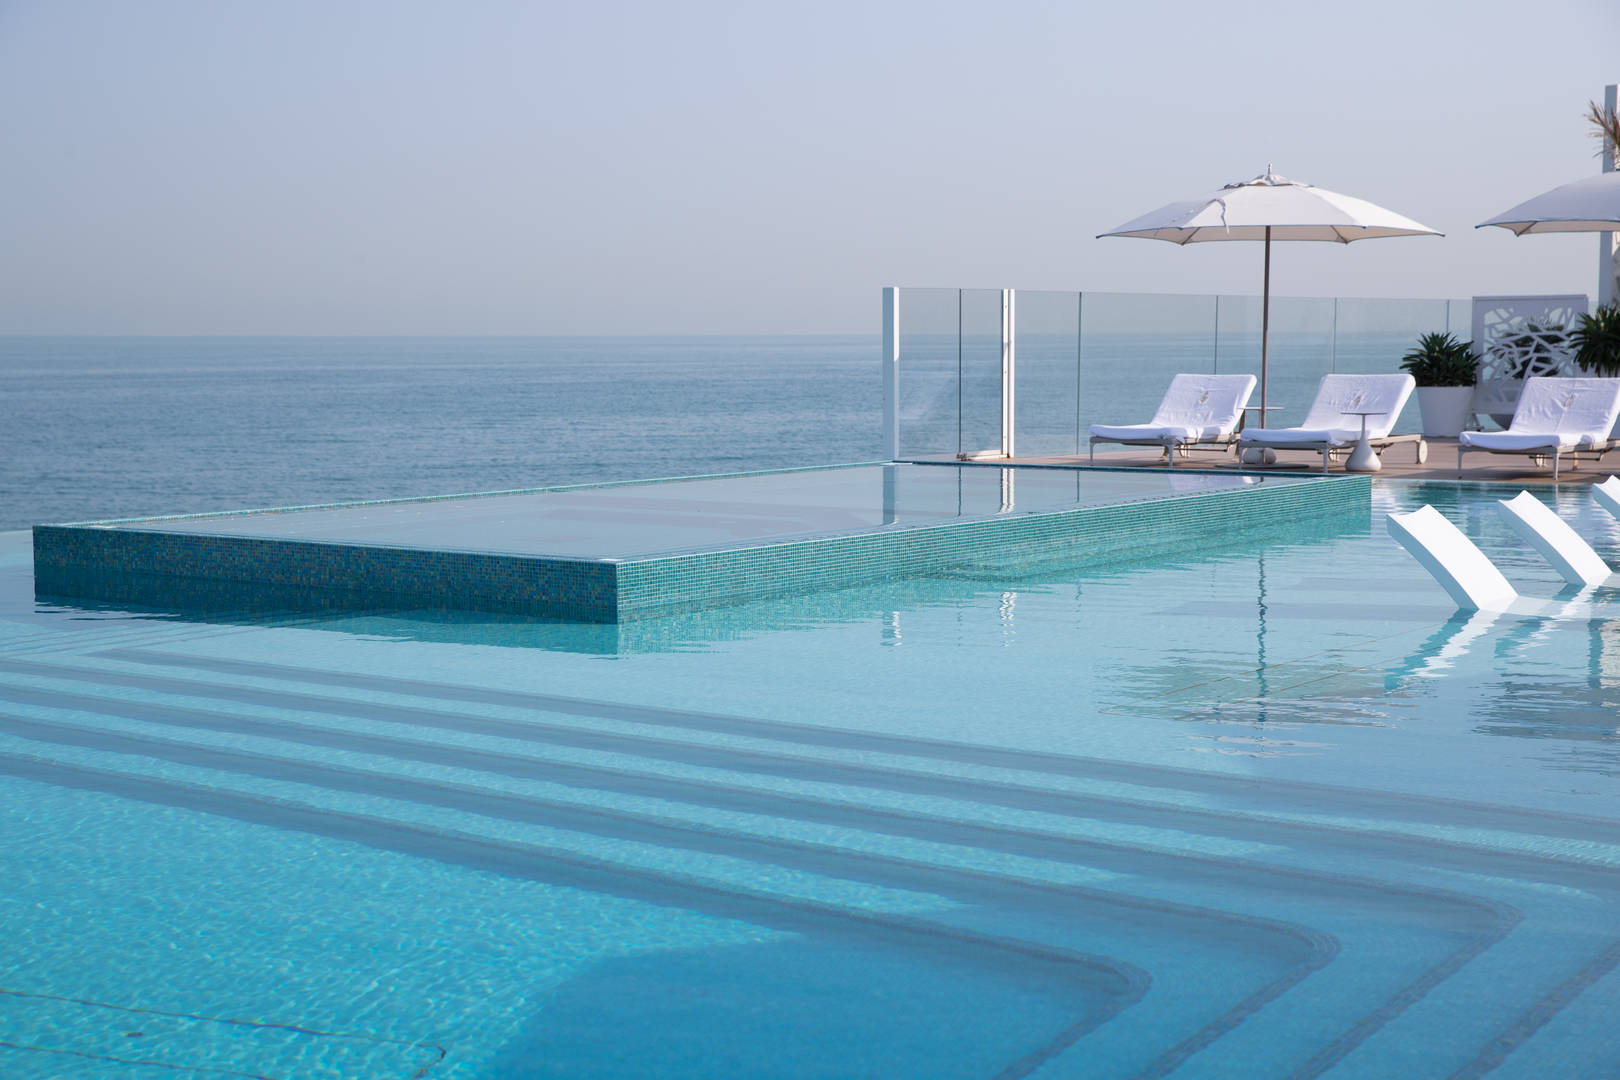 Jumeirah Burj Al Arab Terrace infiniti pool with view of the ocean